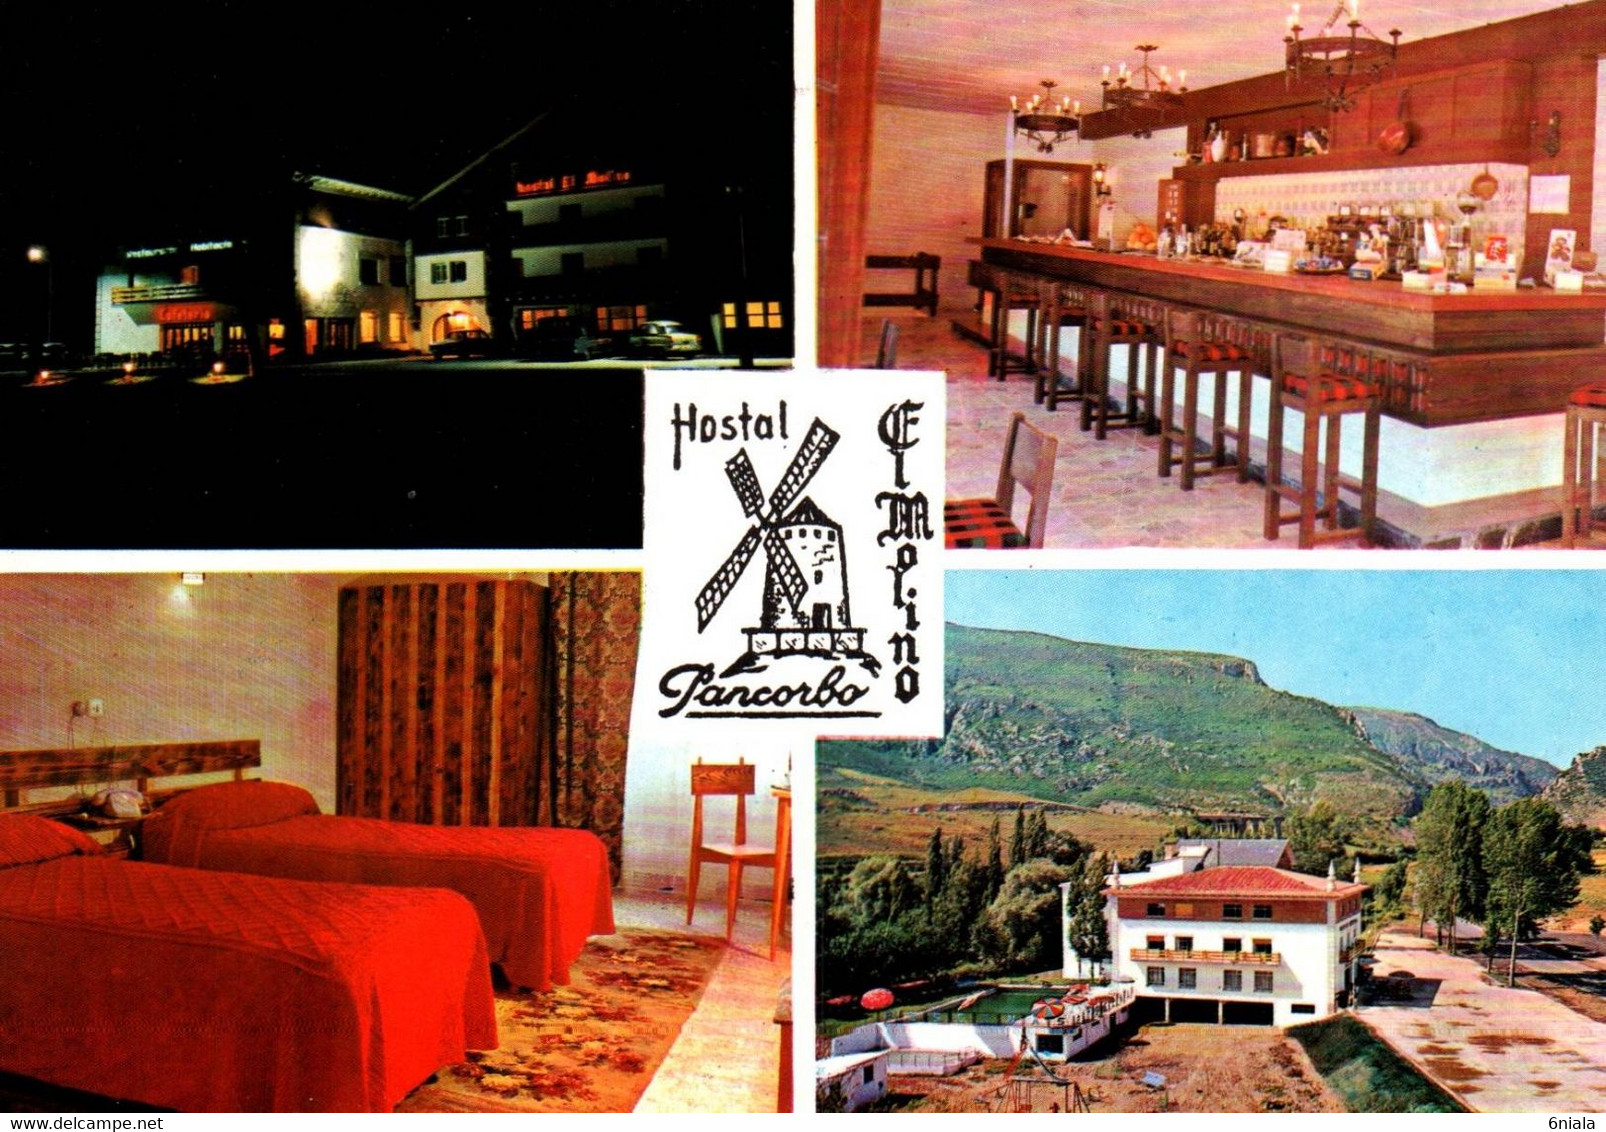 16122   HÔTEL HOSTAL EL MOLINO  PENCORBO  BURGOS  Cafétaria Habitacion Vista General Hostal     Espagne  ( Recto Verso) - Hotels & Restaurants